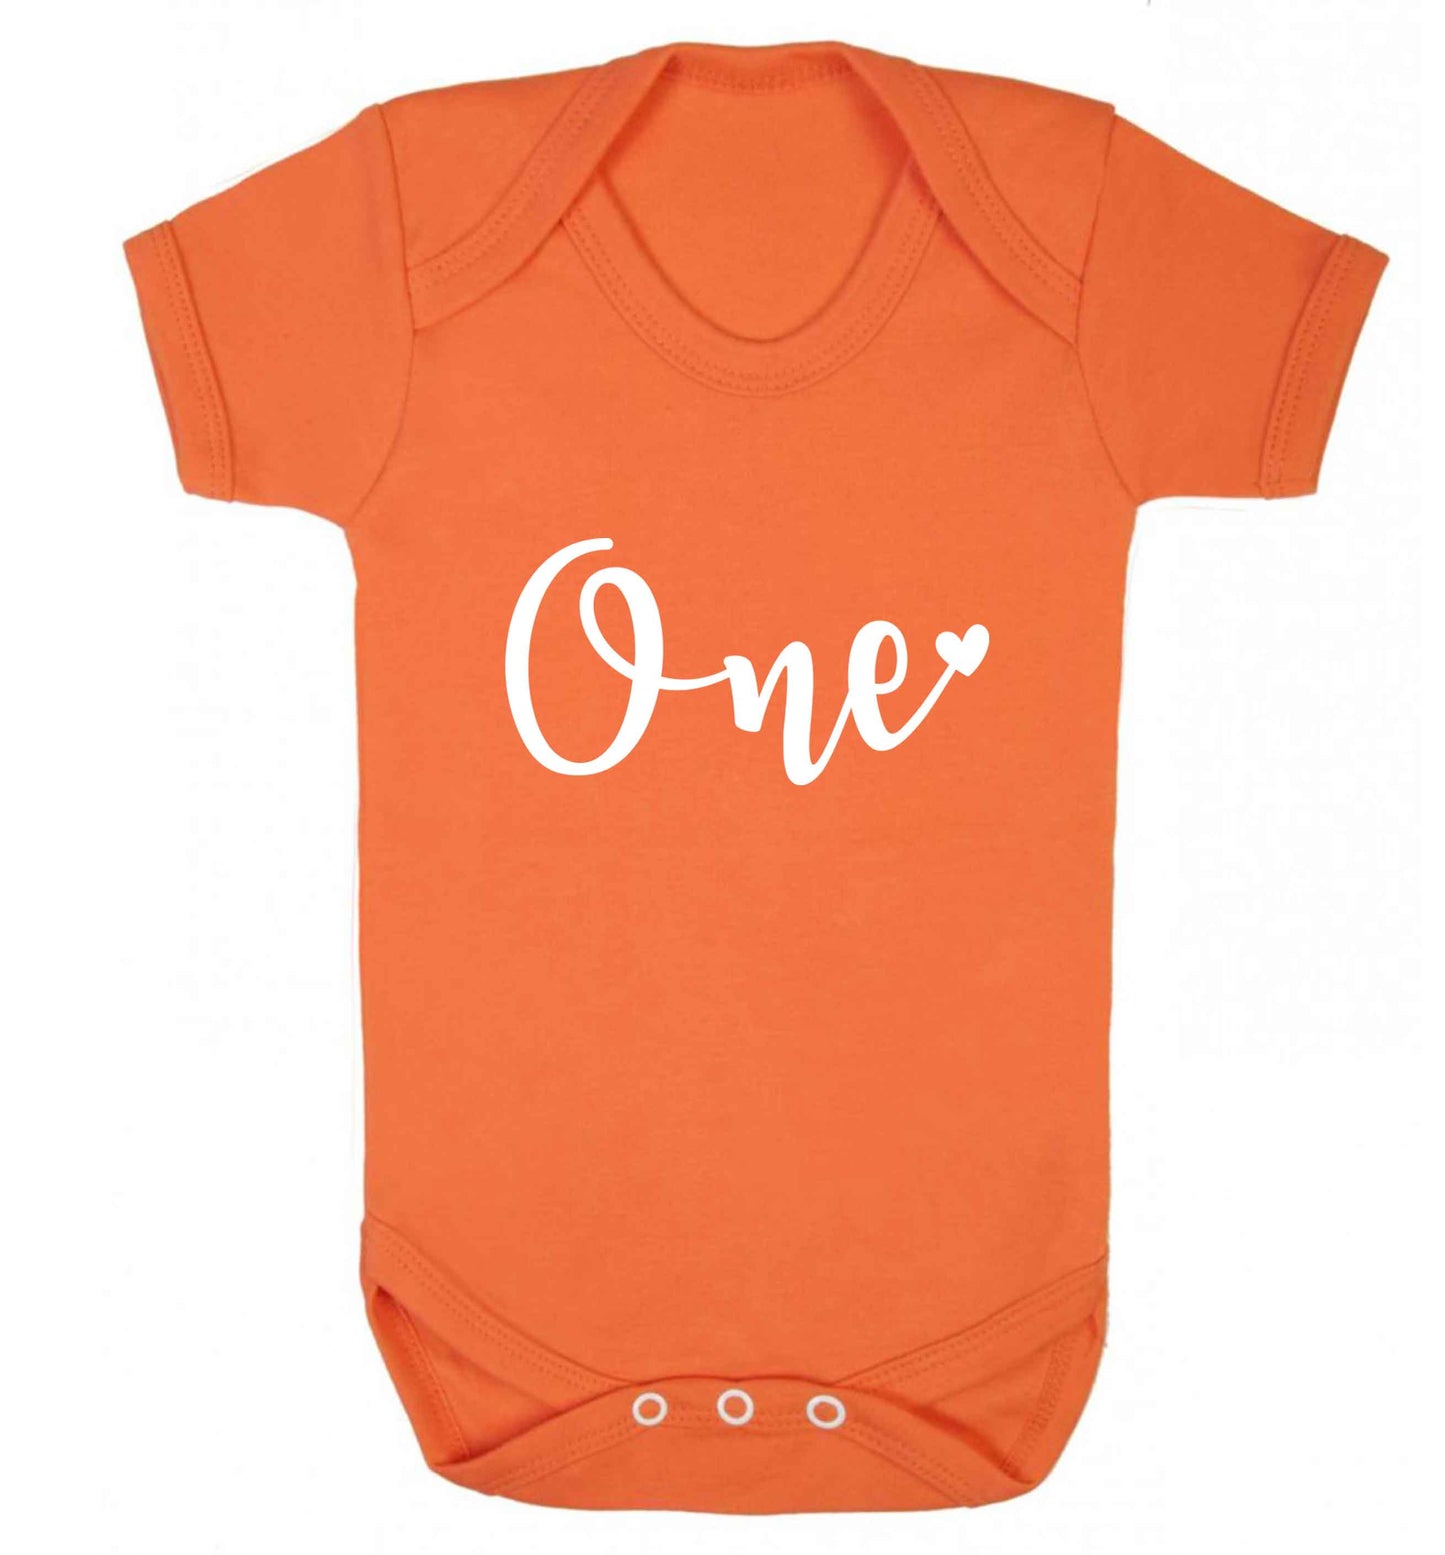 One baby vest orange 18-24 months